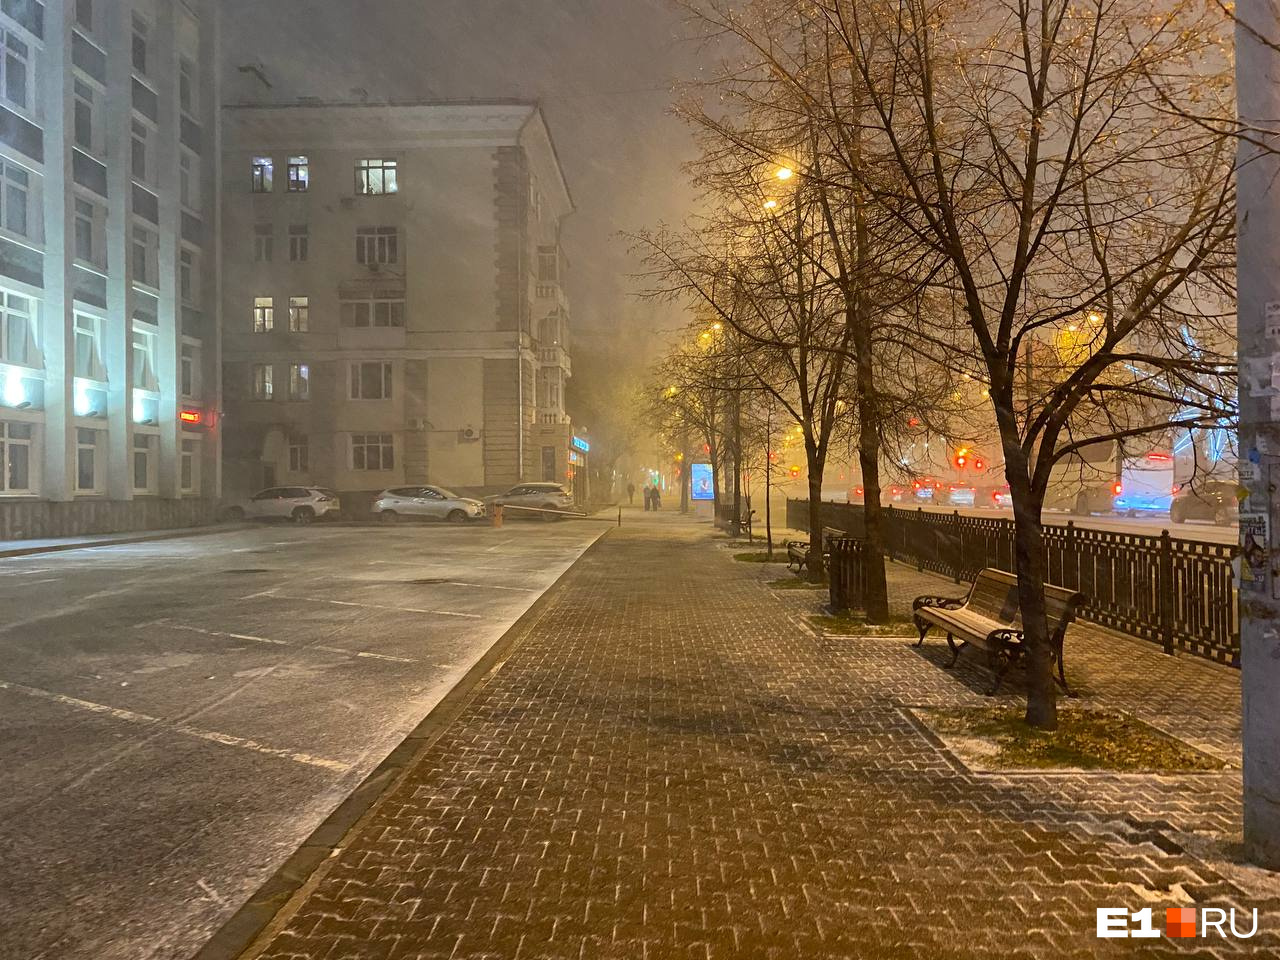 Придет ли зима на следующей неделе? Синоптики рассказали, чего ждать от погоды в Екатеринбурге